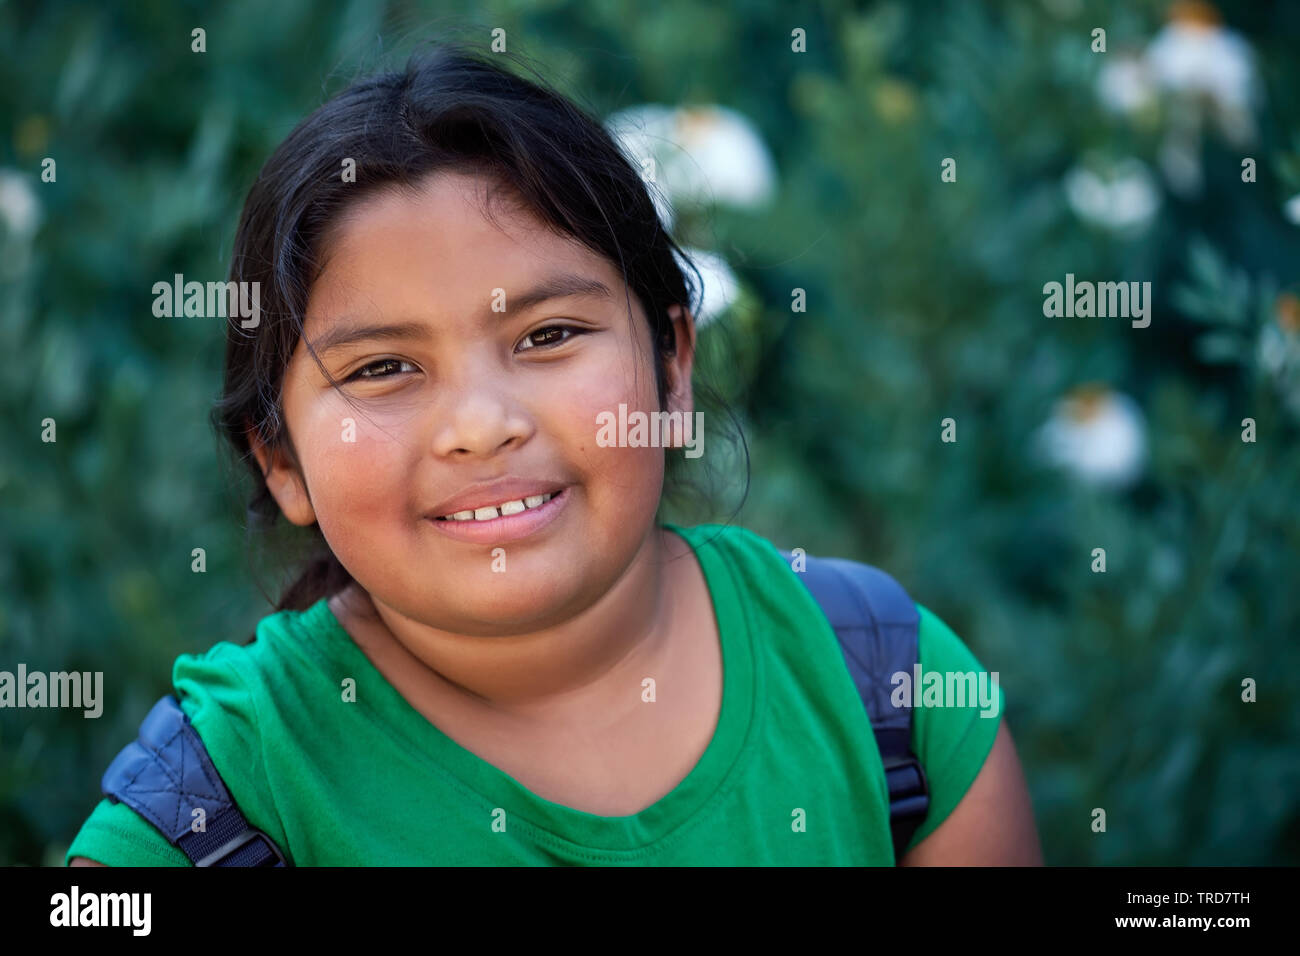 Cute elementary Student mit Rucksack vor Grün Blumen mit einer positiven Einstellung und natürliches Aussehen. Stockfoto